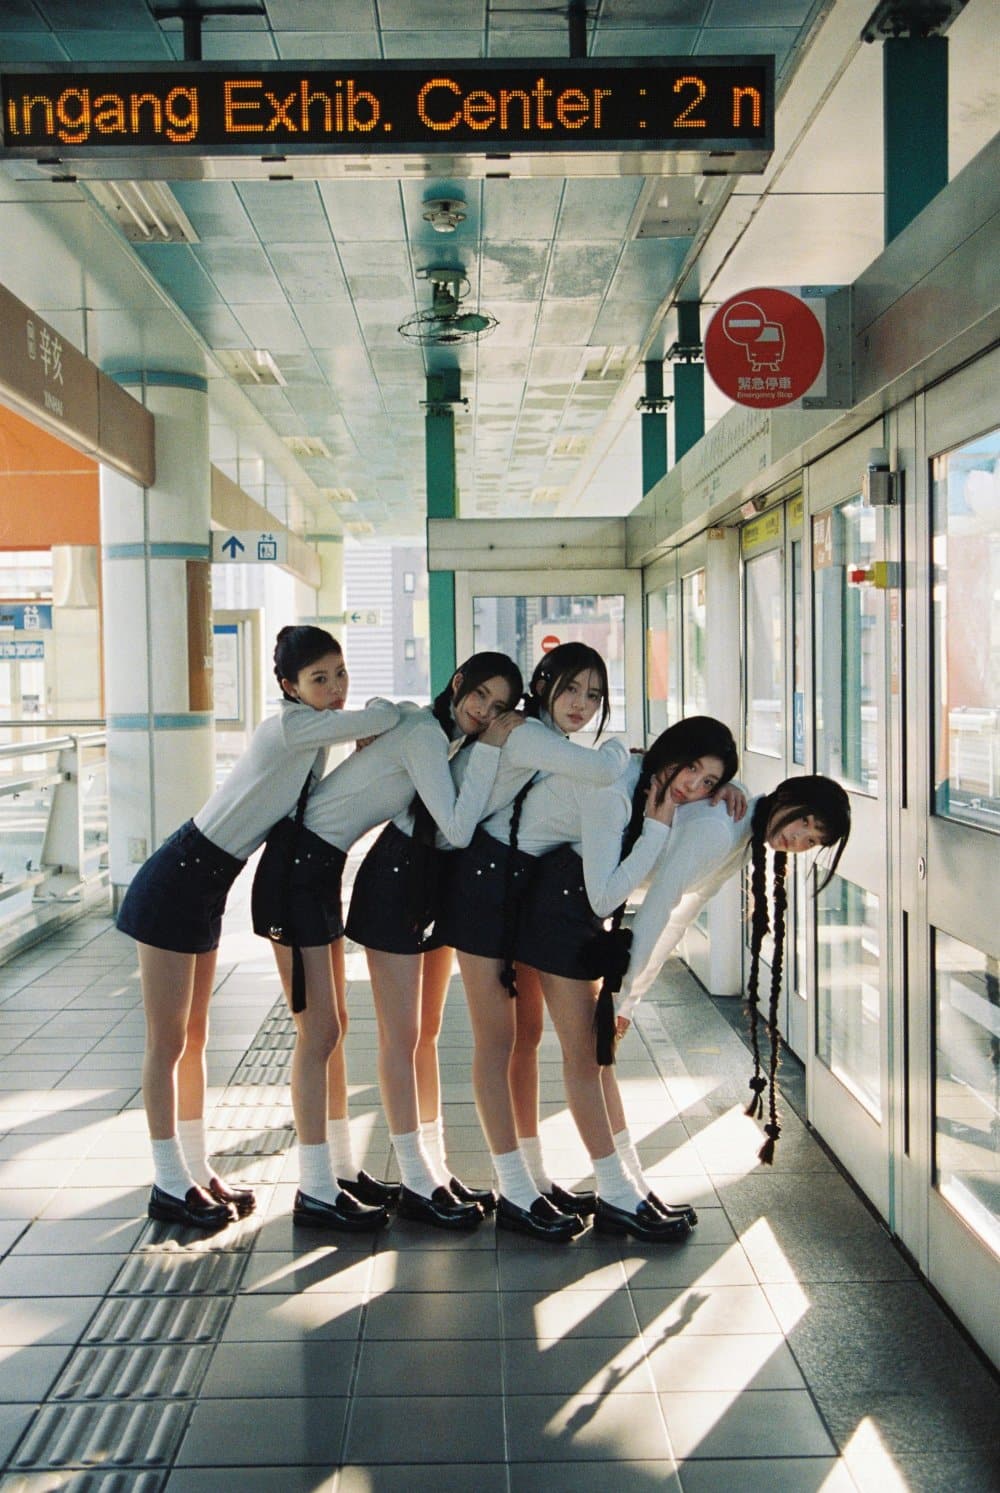 ILLIT представляют дебютный мини-альбом "Super Real Me" с милым видео-тизером и новыми фото